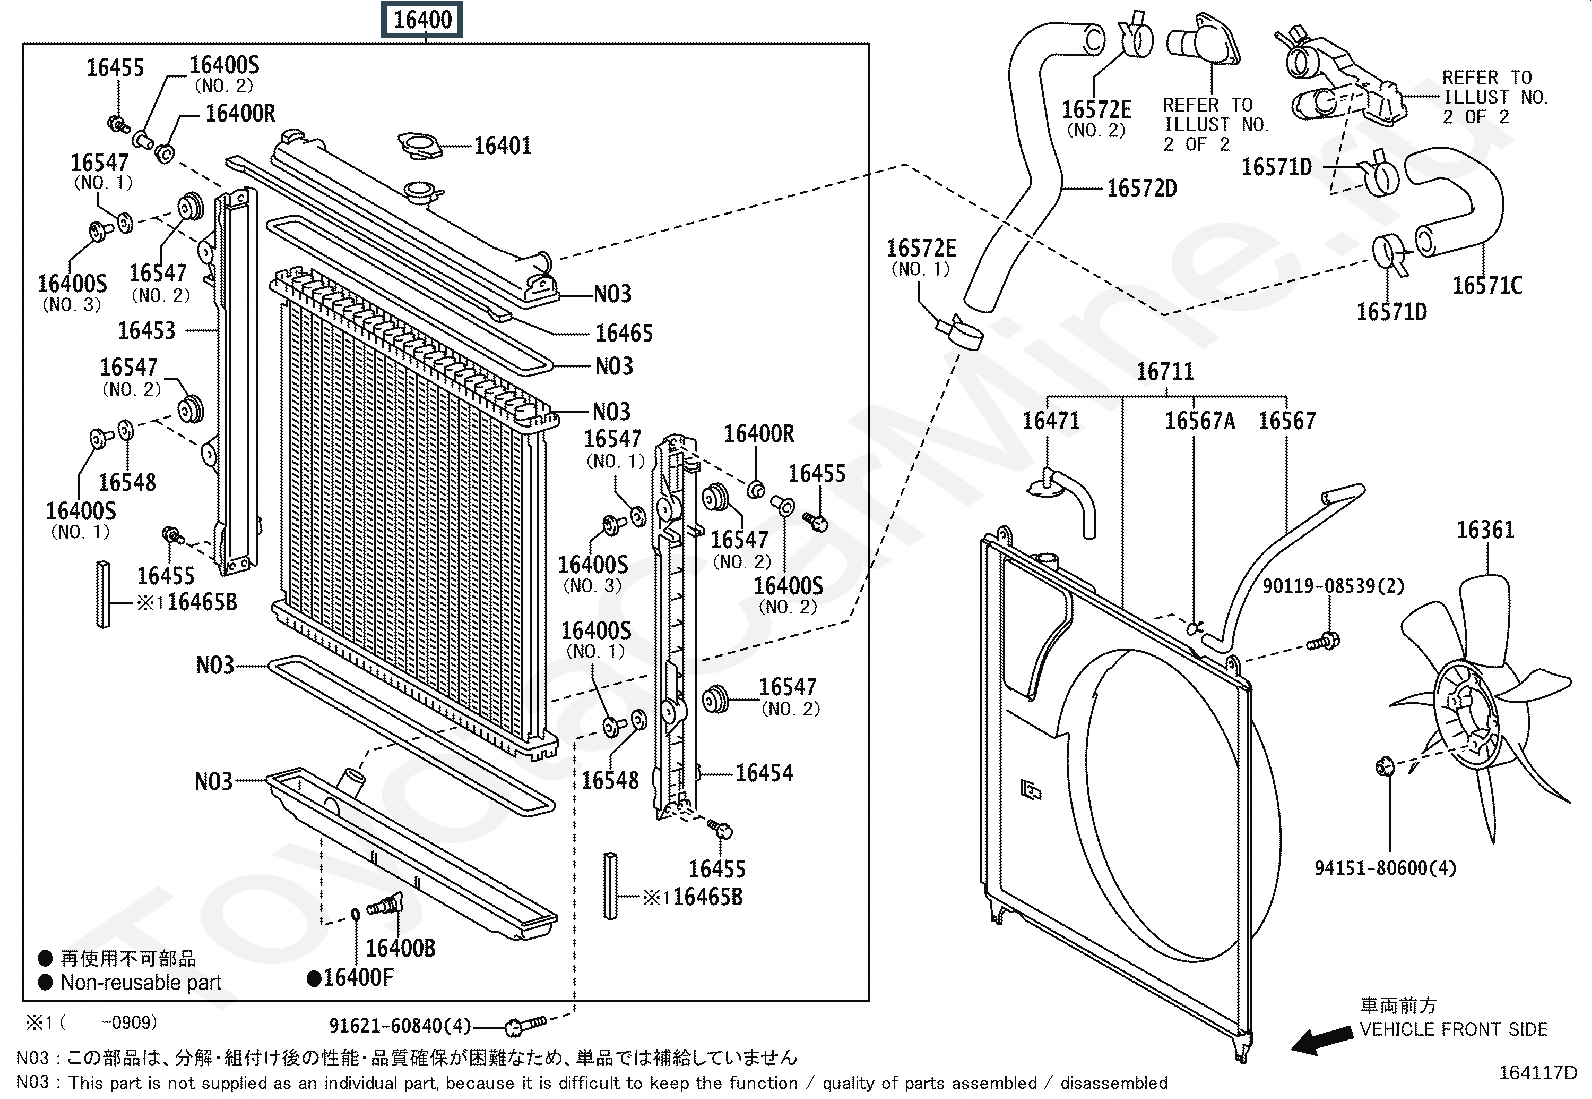 радиатор двигателя Лексус (артикул 1640050384)